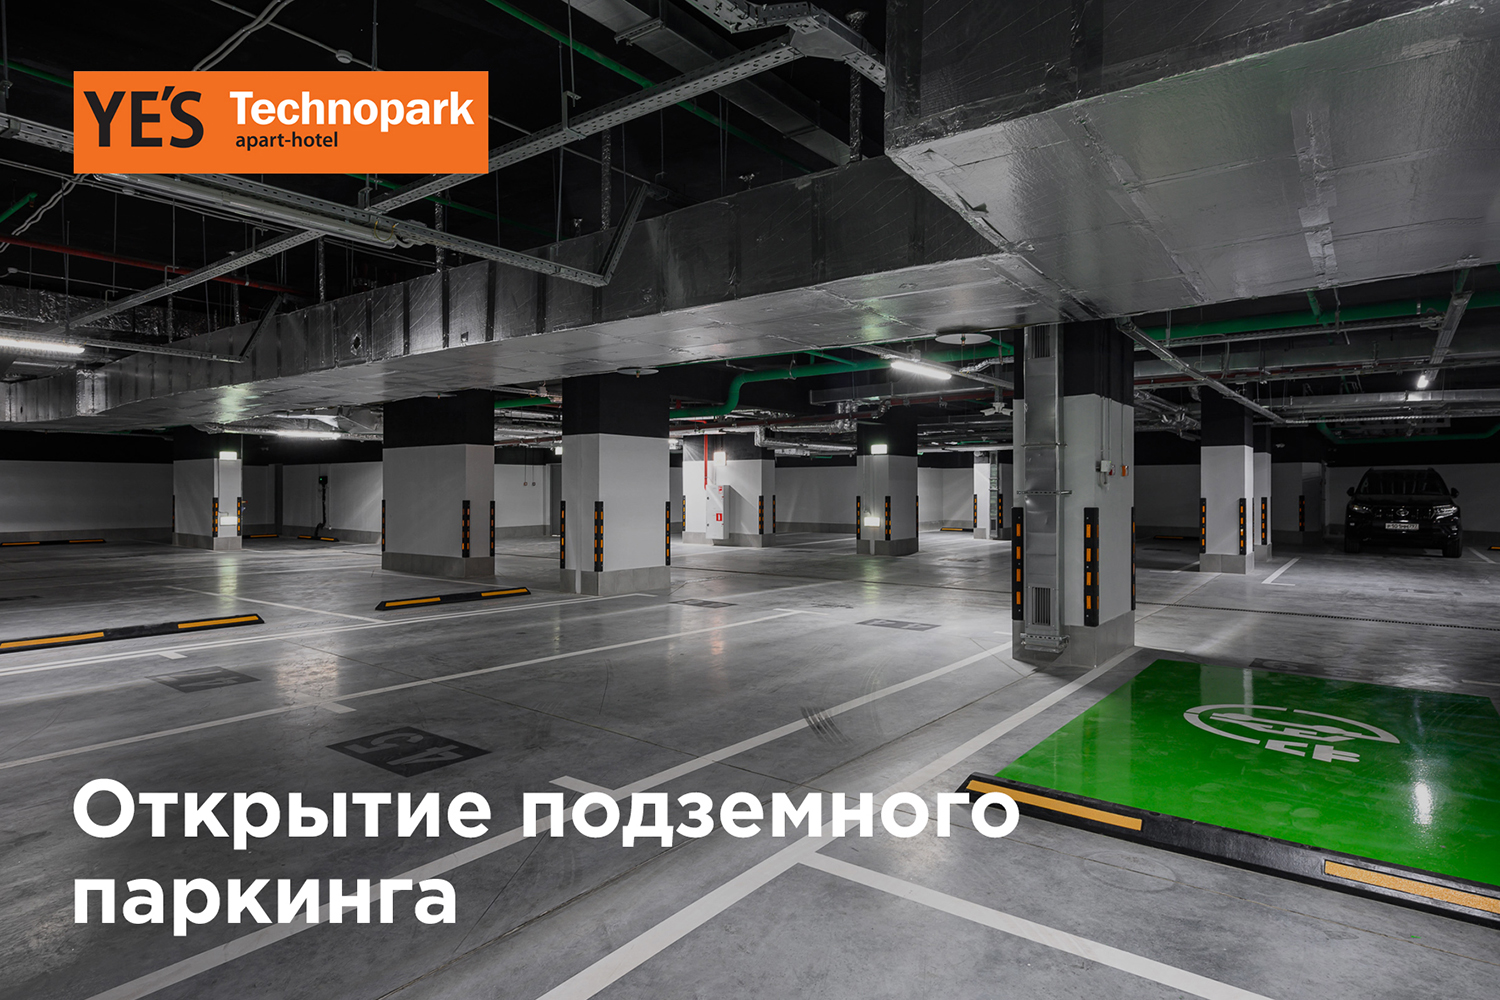 Подземный паркинг теперь и в YE’S Technopark!